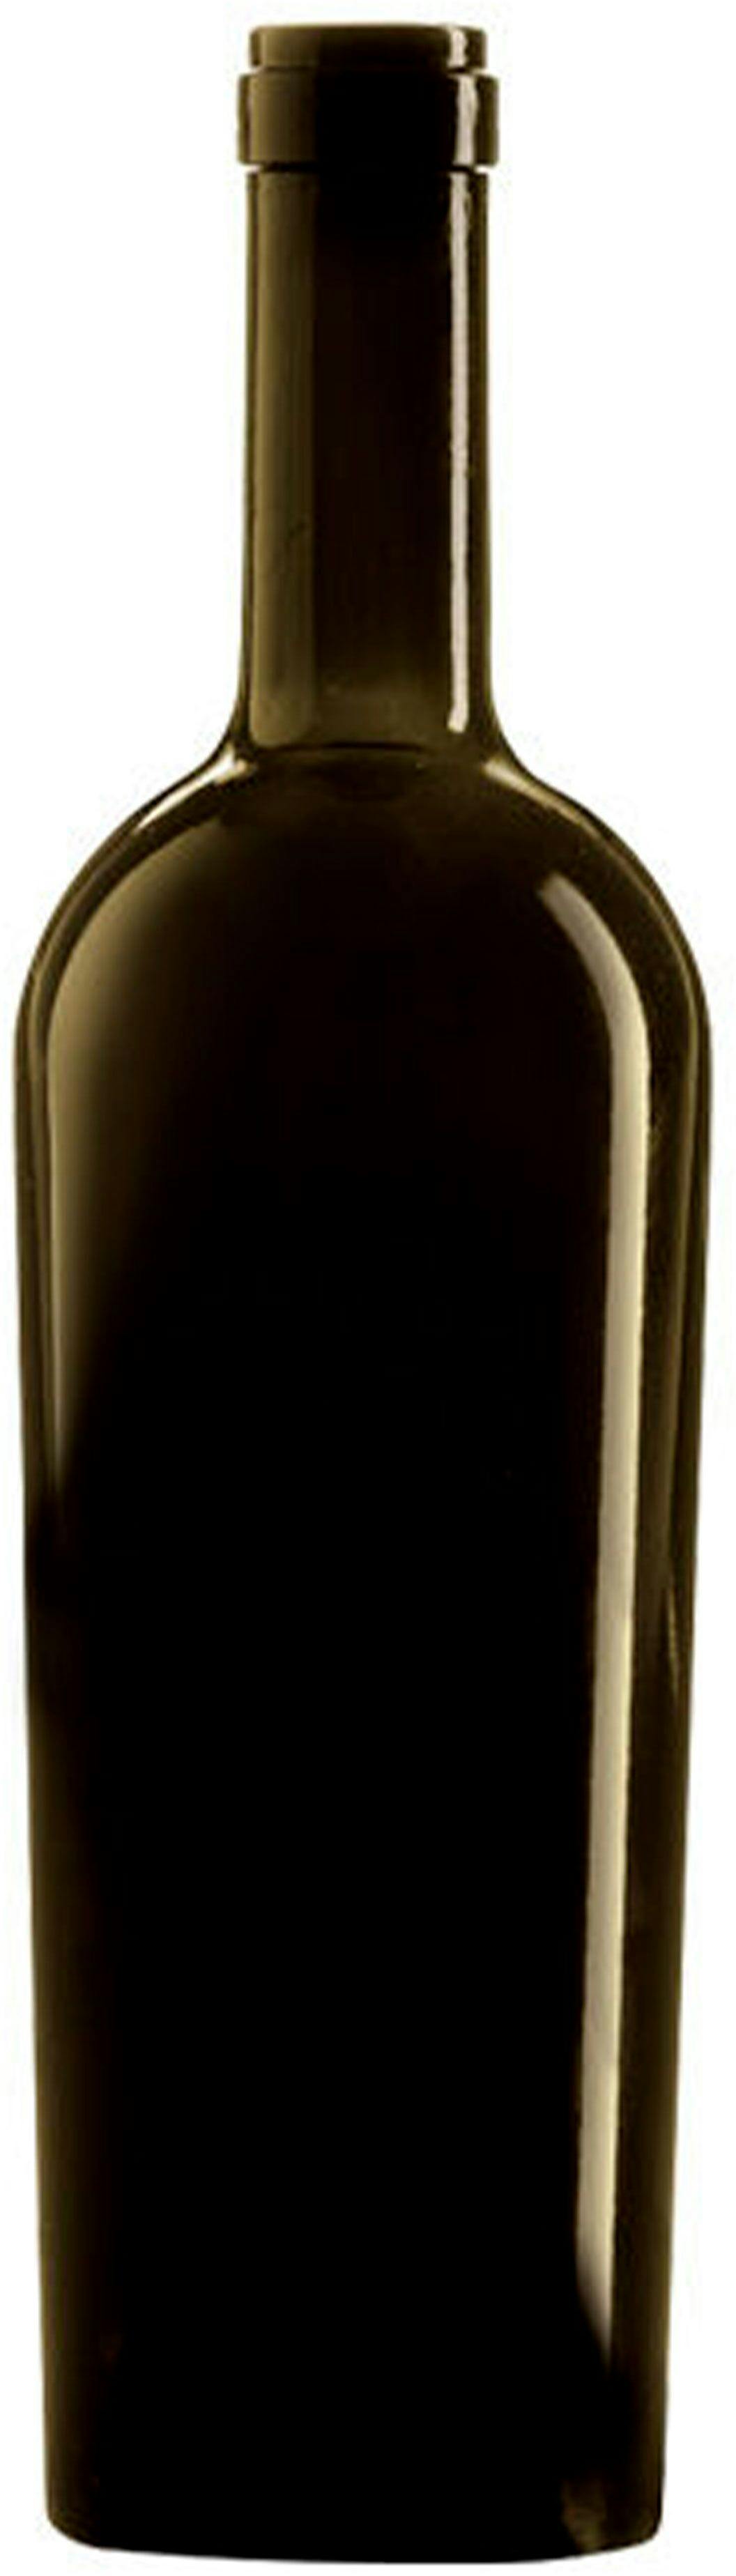 Bottle BORD JUMBO 750 HEAVY S VA